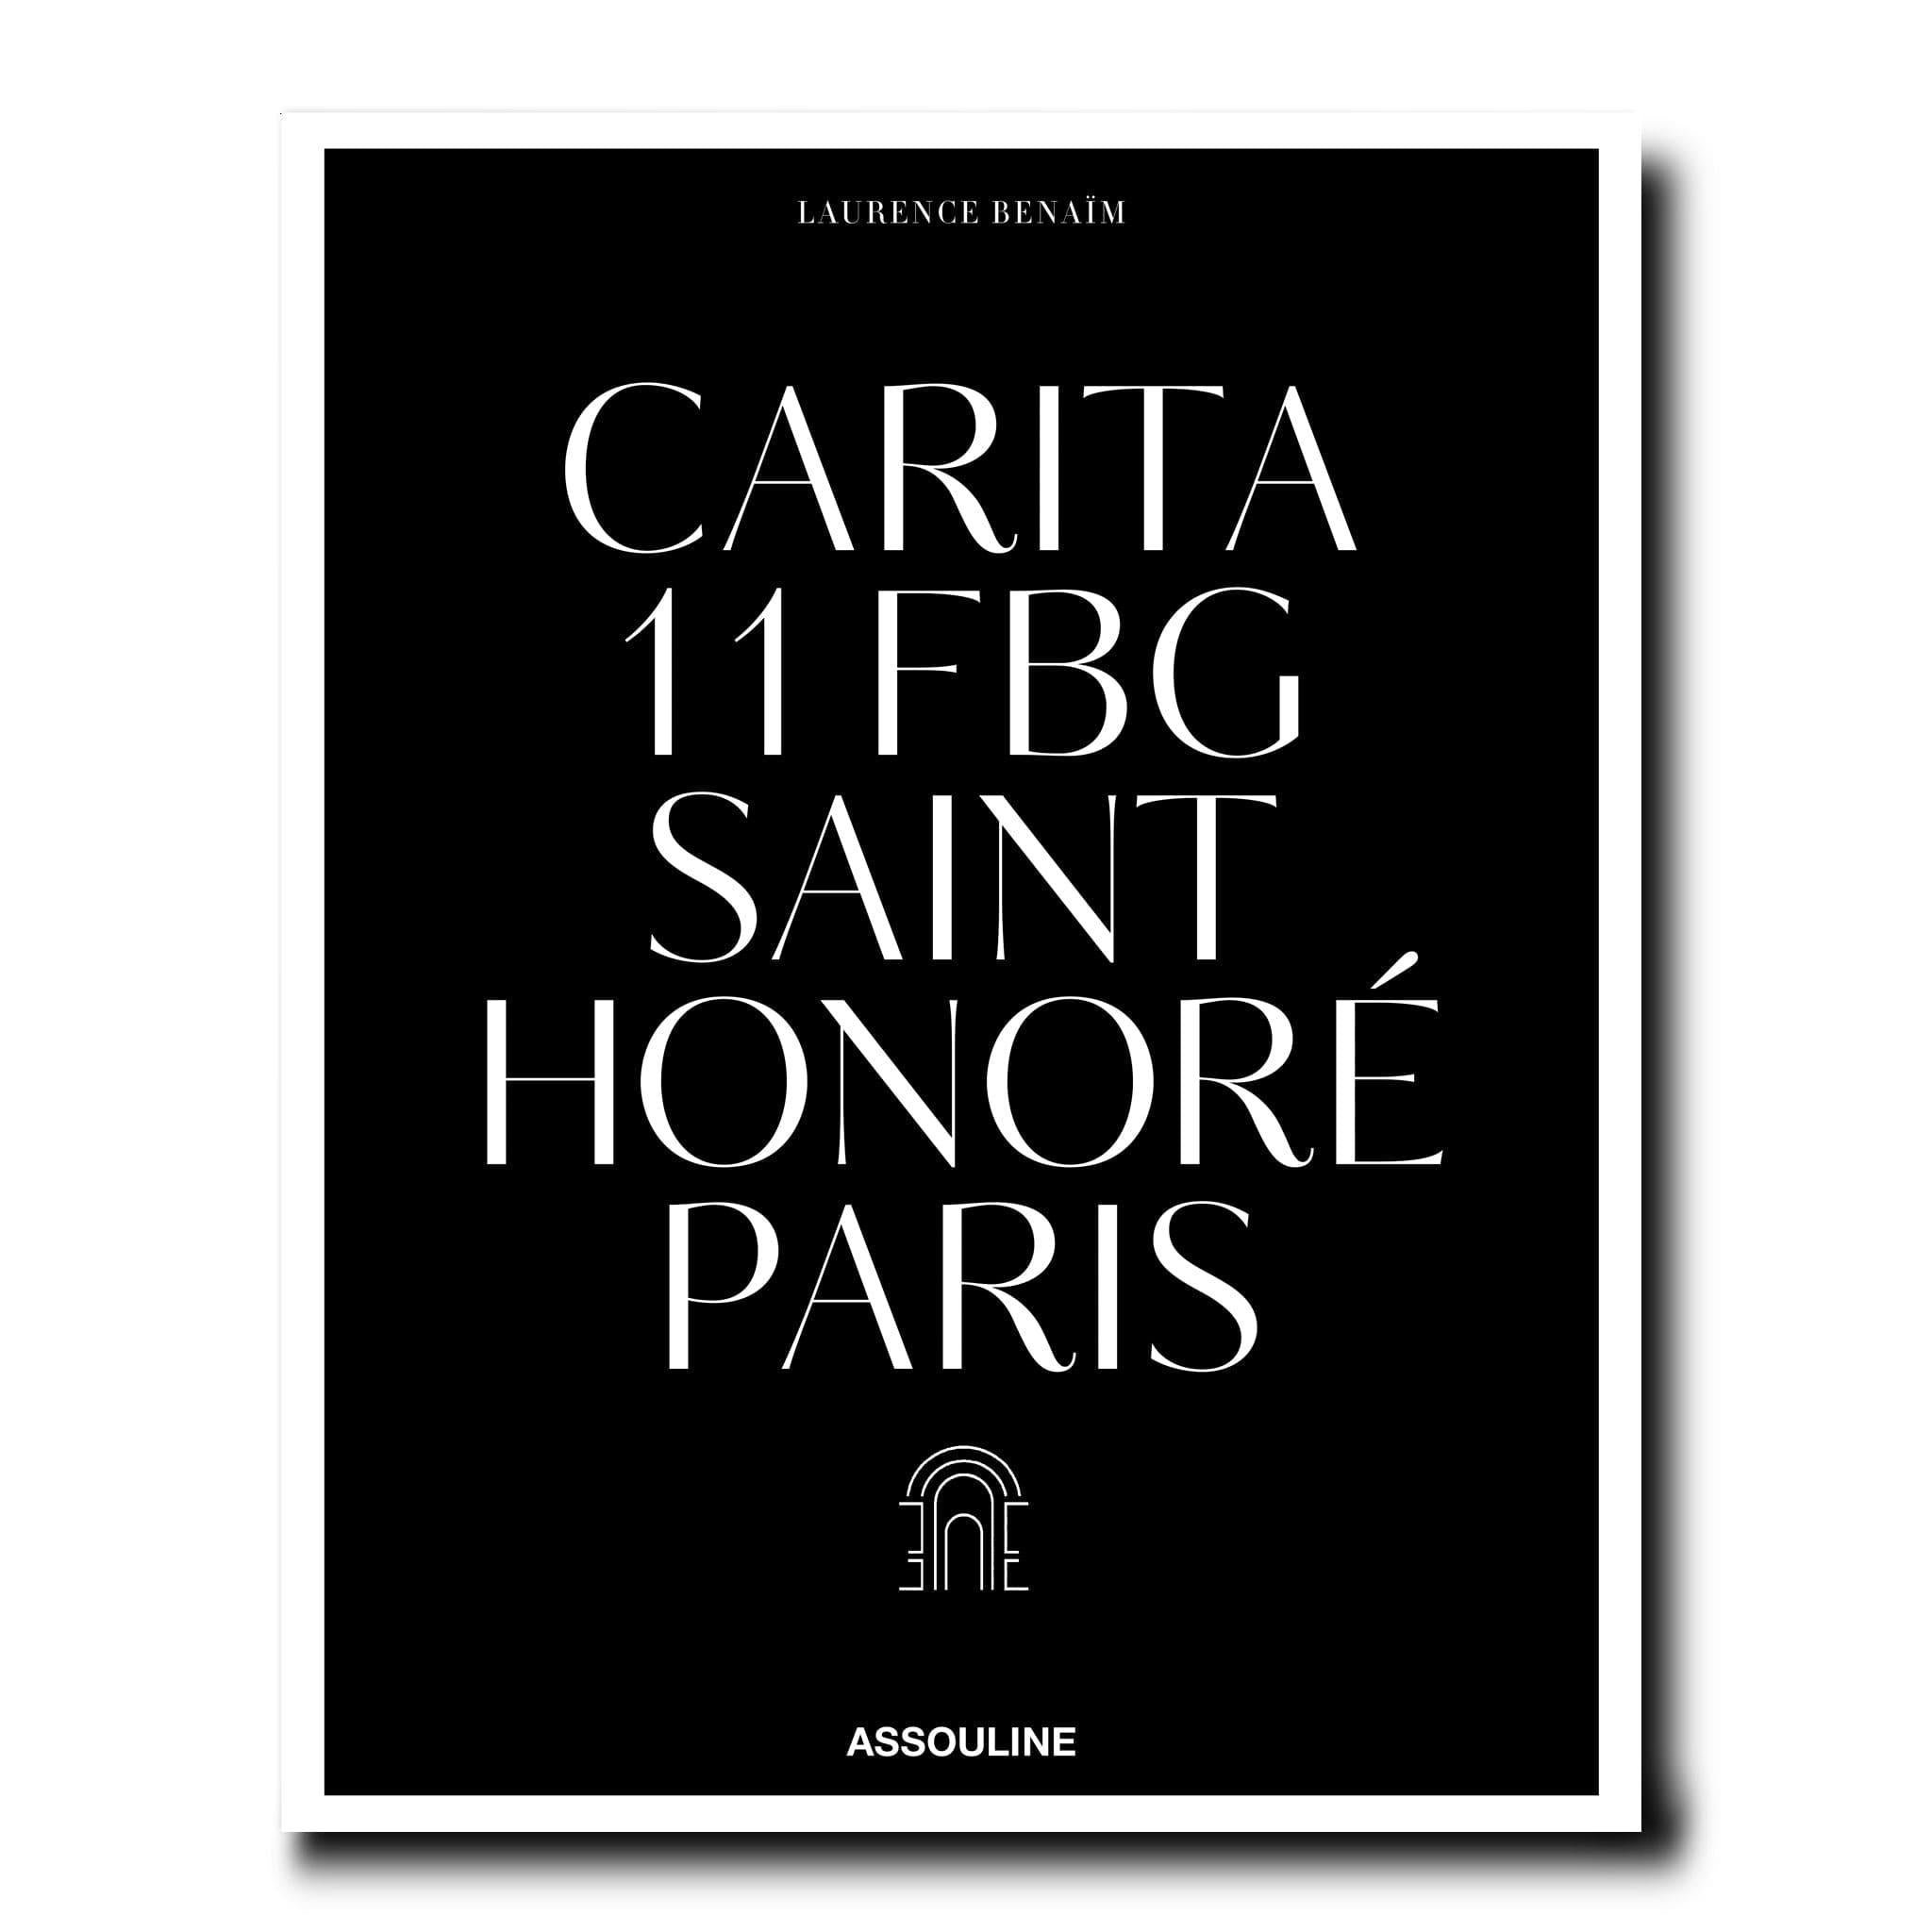 Carita: 11 FBG Saint Honore Paris